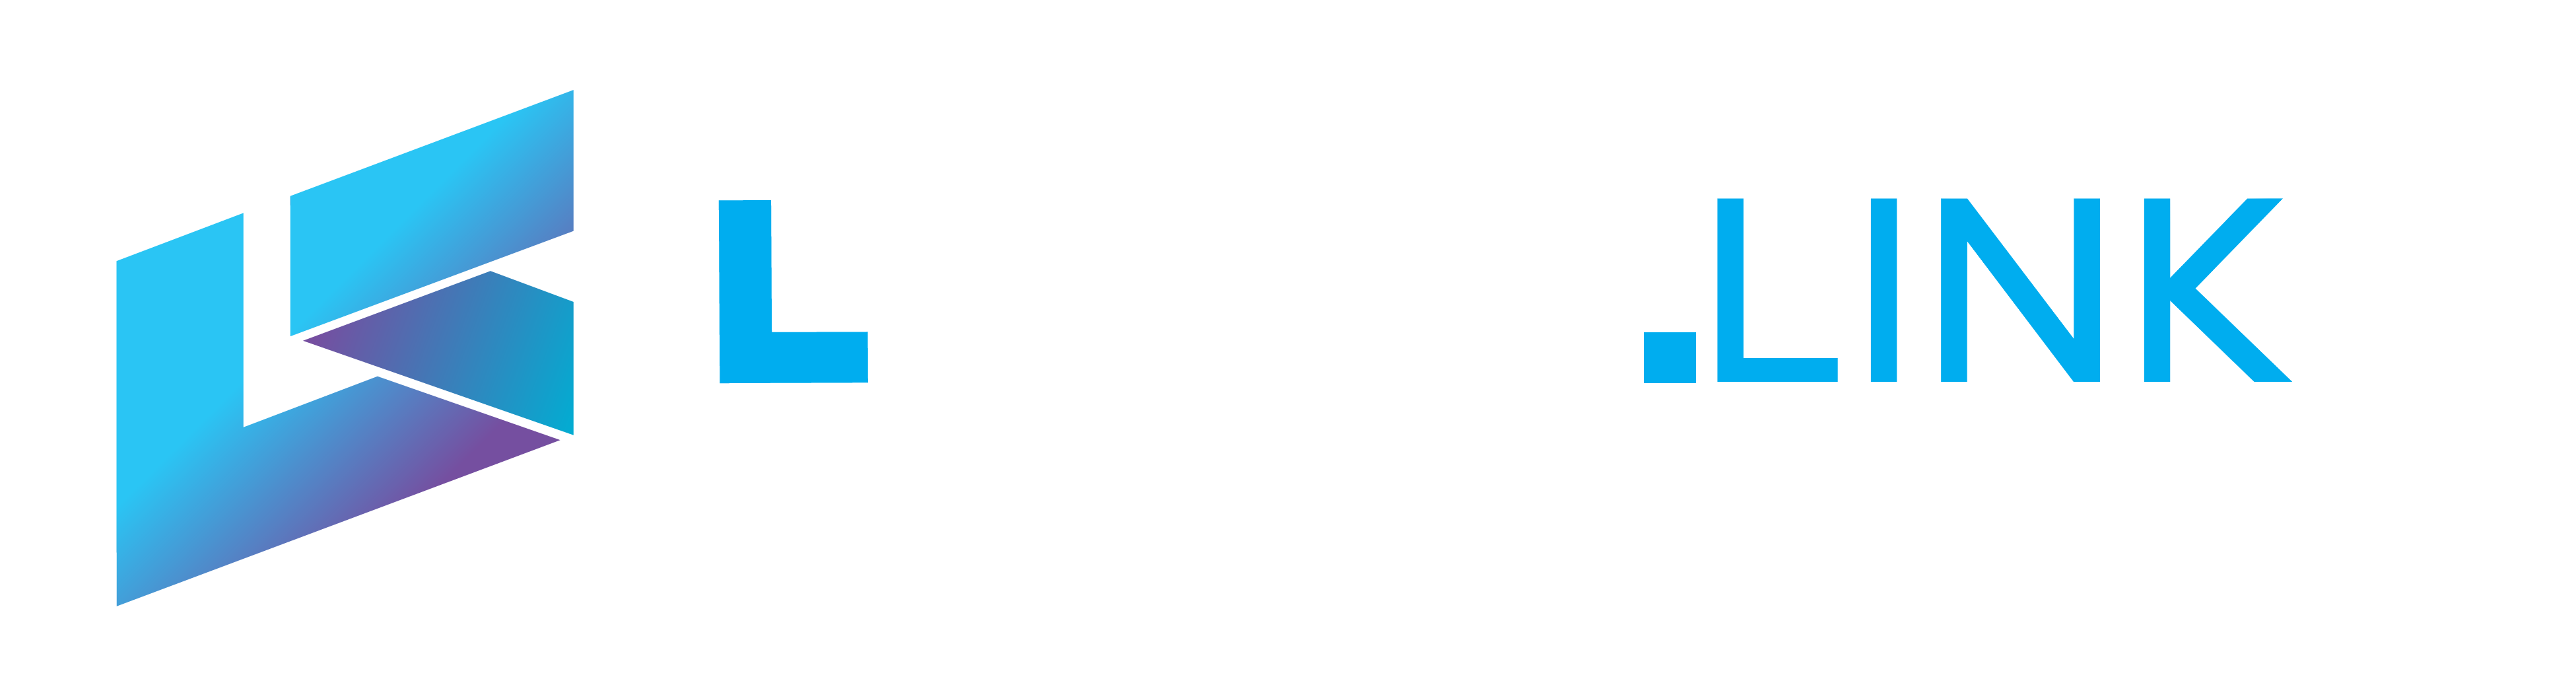 LStahl-Media | Linkkürzer